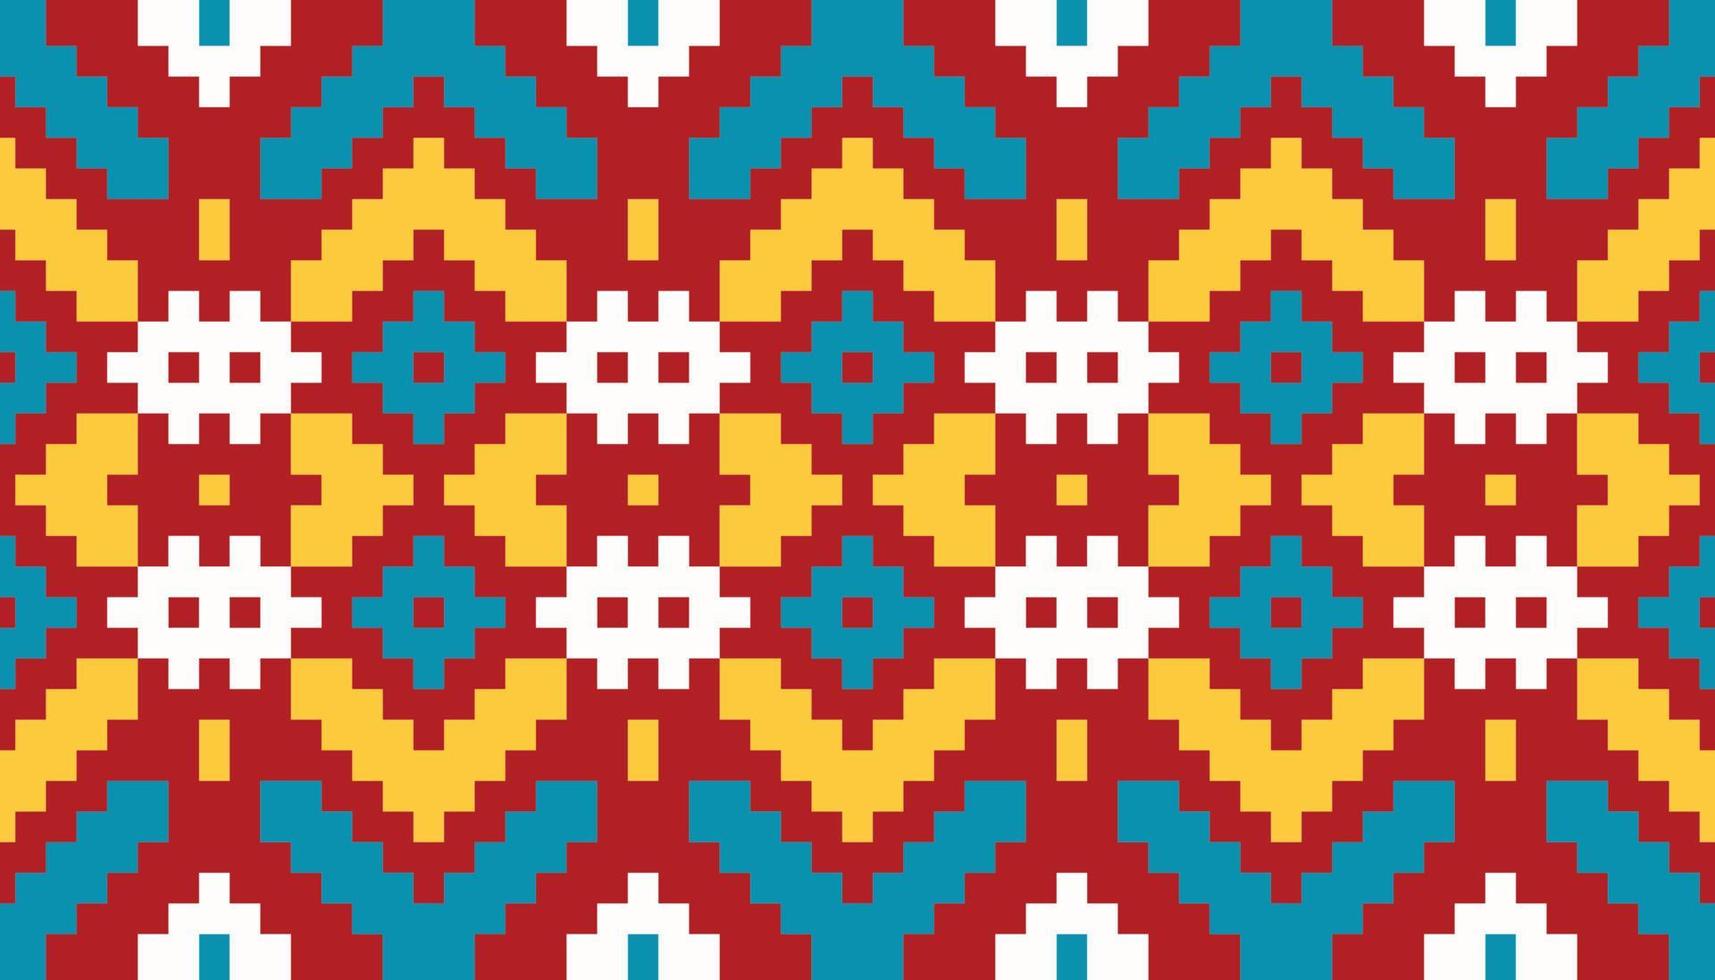 afrikanische muster stoff design für drucke hintergrundbild textur kleid mode stoff papier teppich textilindustrie vektor